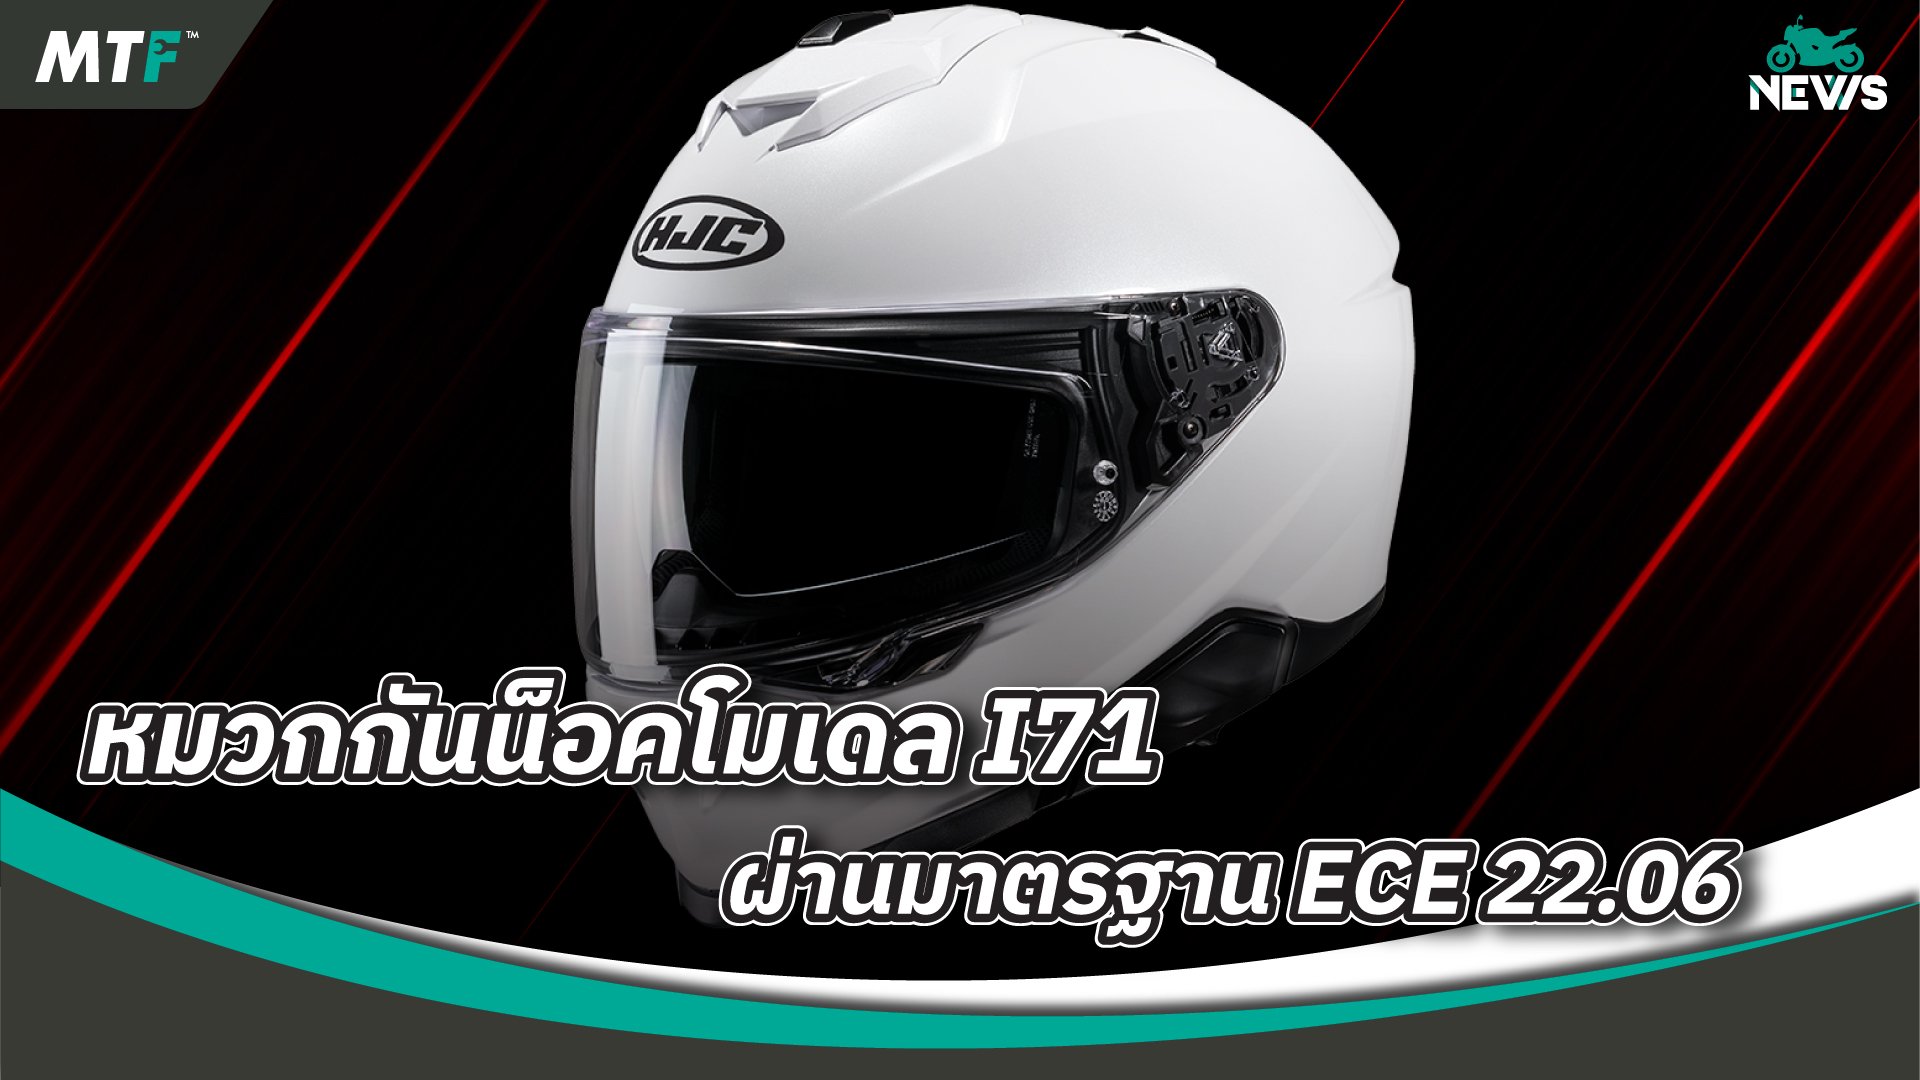 หมวกกันน็อค HJC รุ่น I71 ได้รับมาตรฐาน ECE 22.06 เป็นที่เรียบร้อยแล้ว